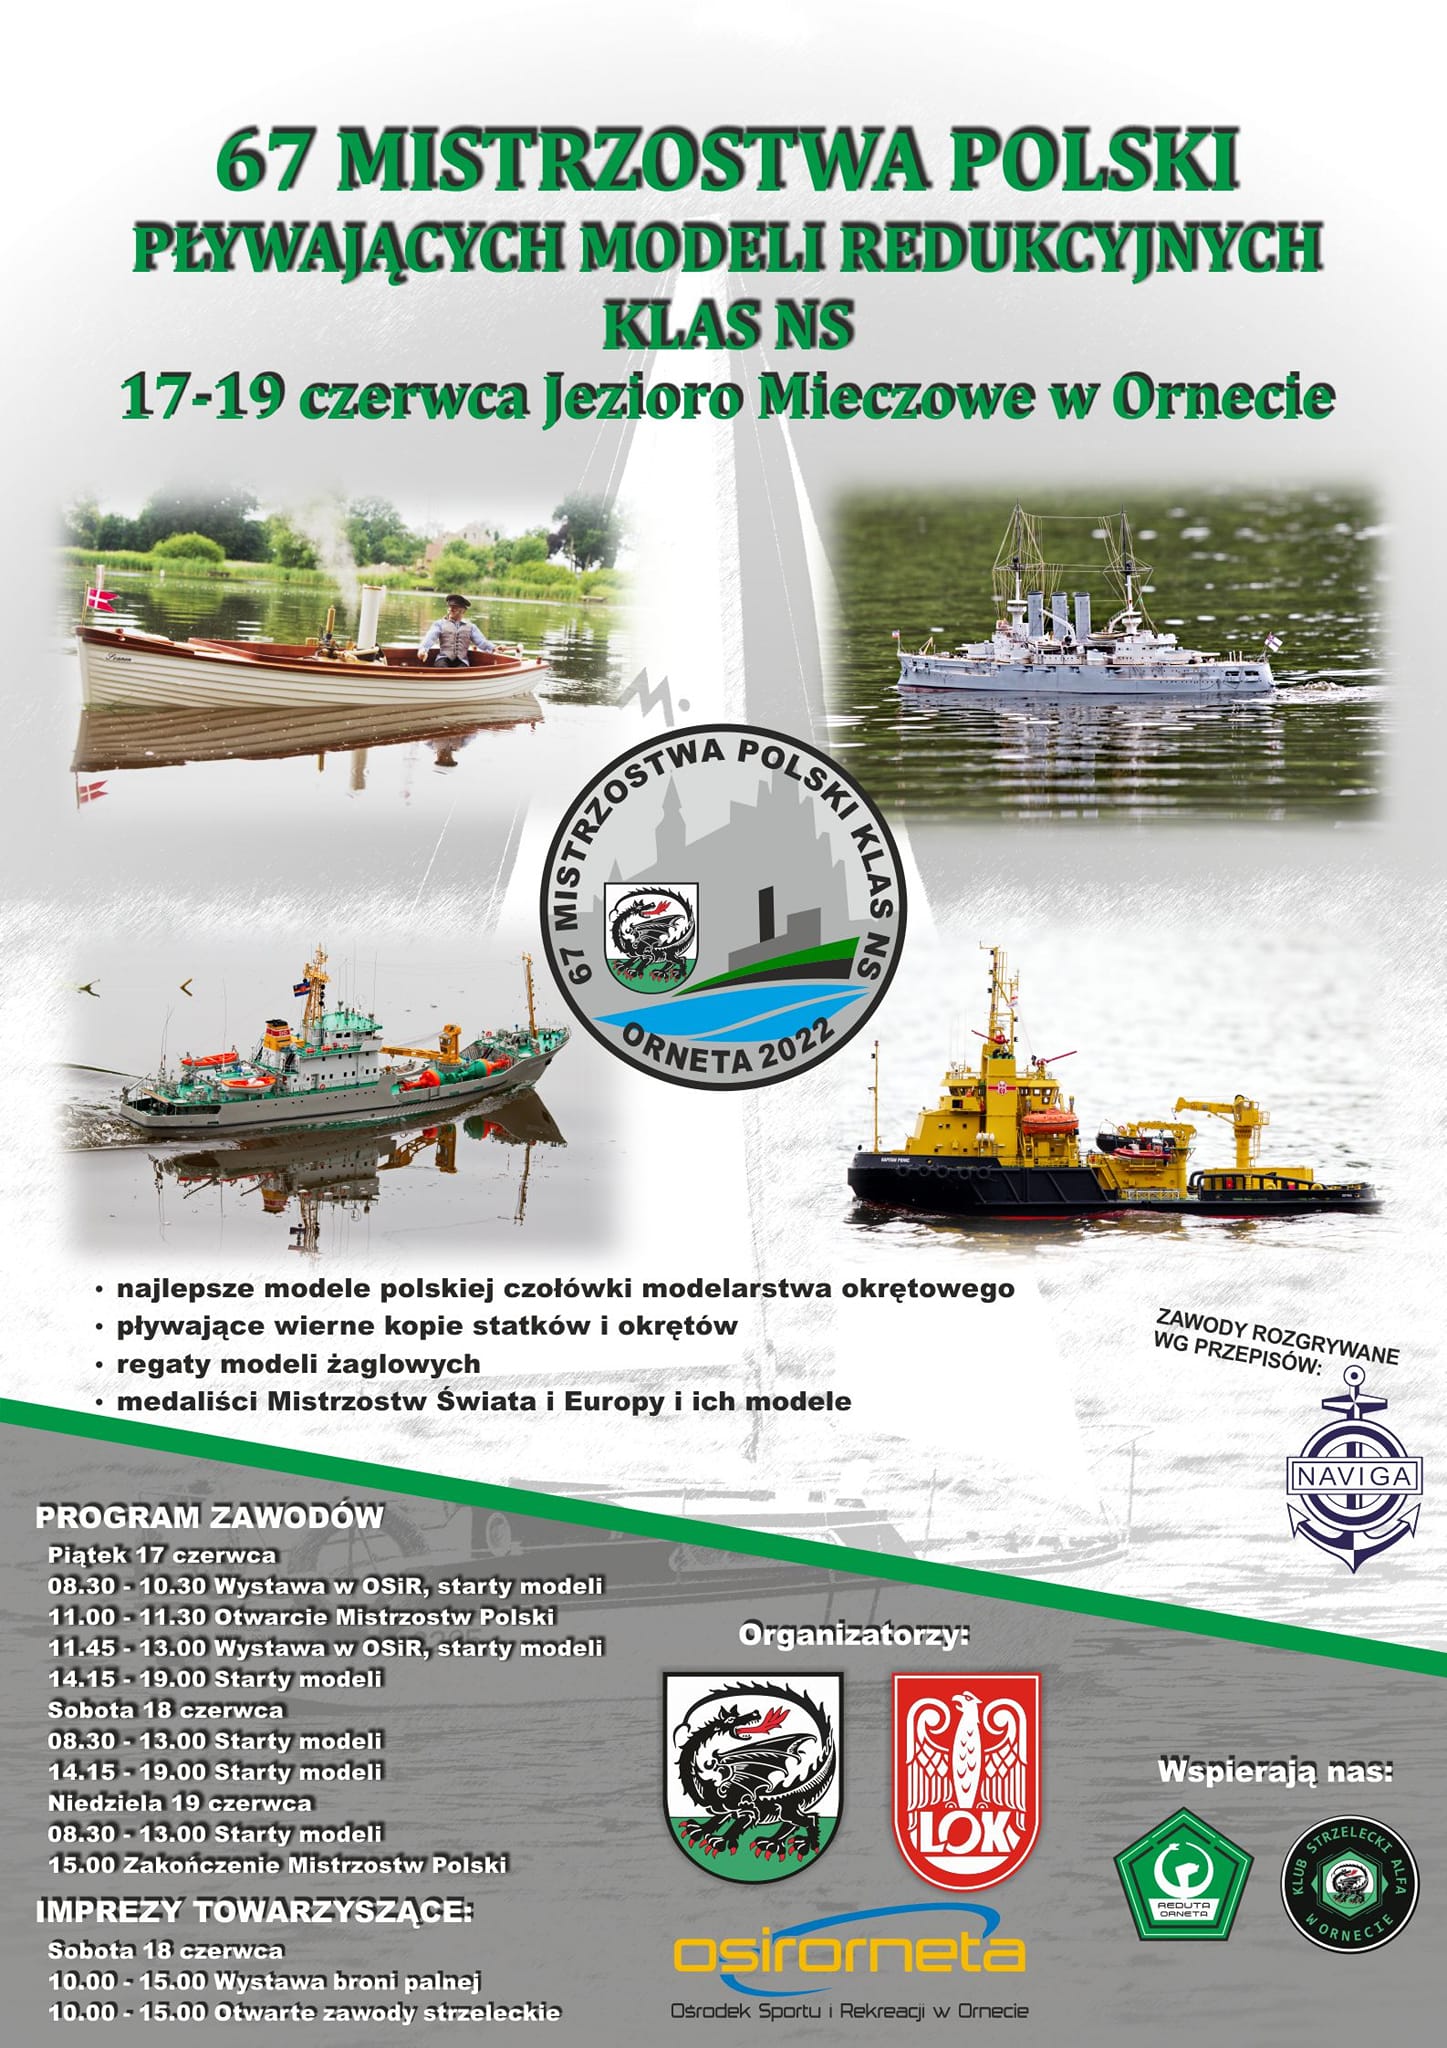 67 Mistrzostwa Polski Pływających Modeli Redukcyjnych Klas NS